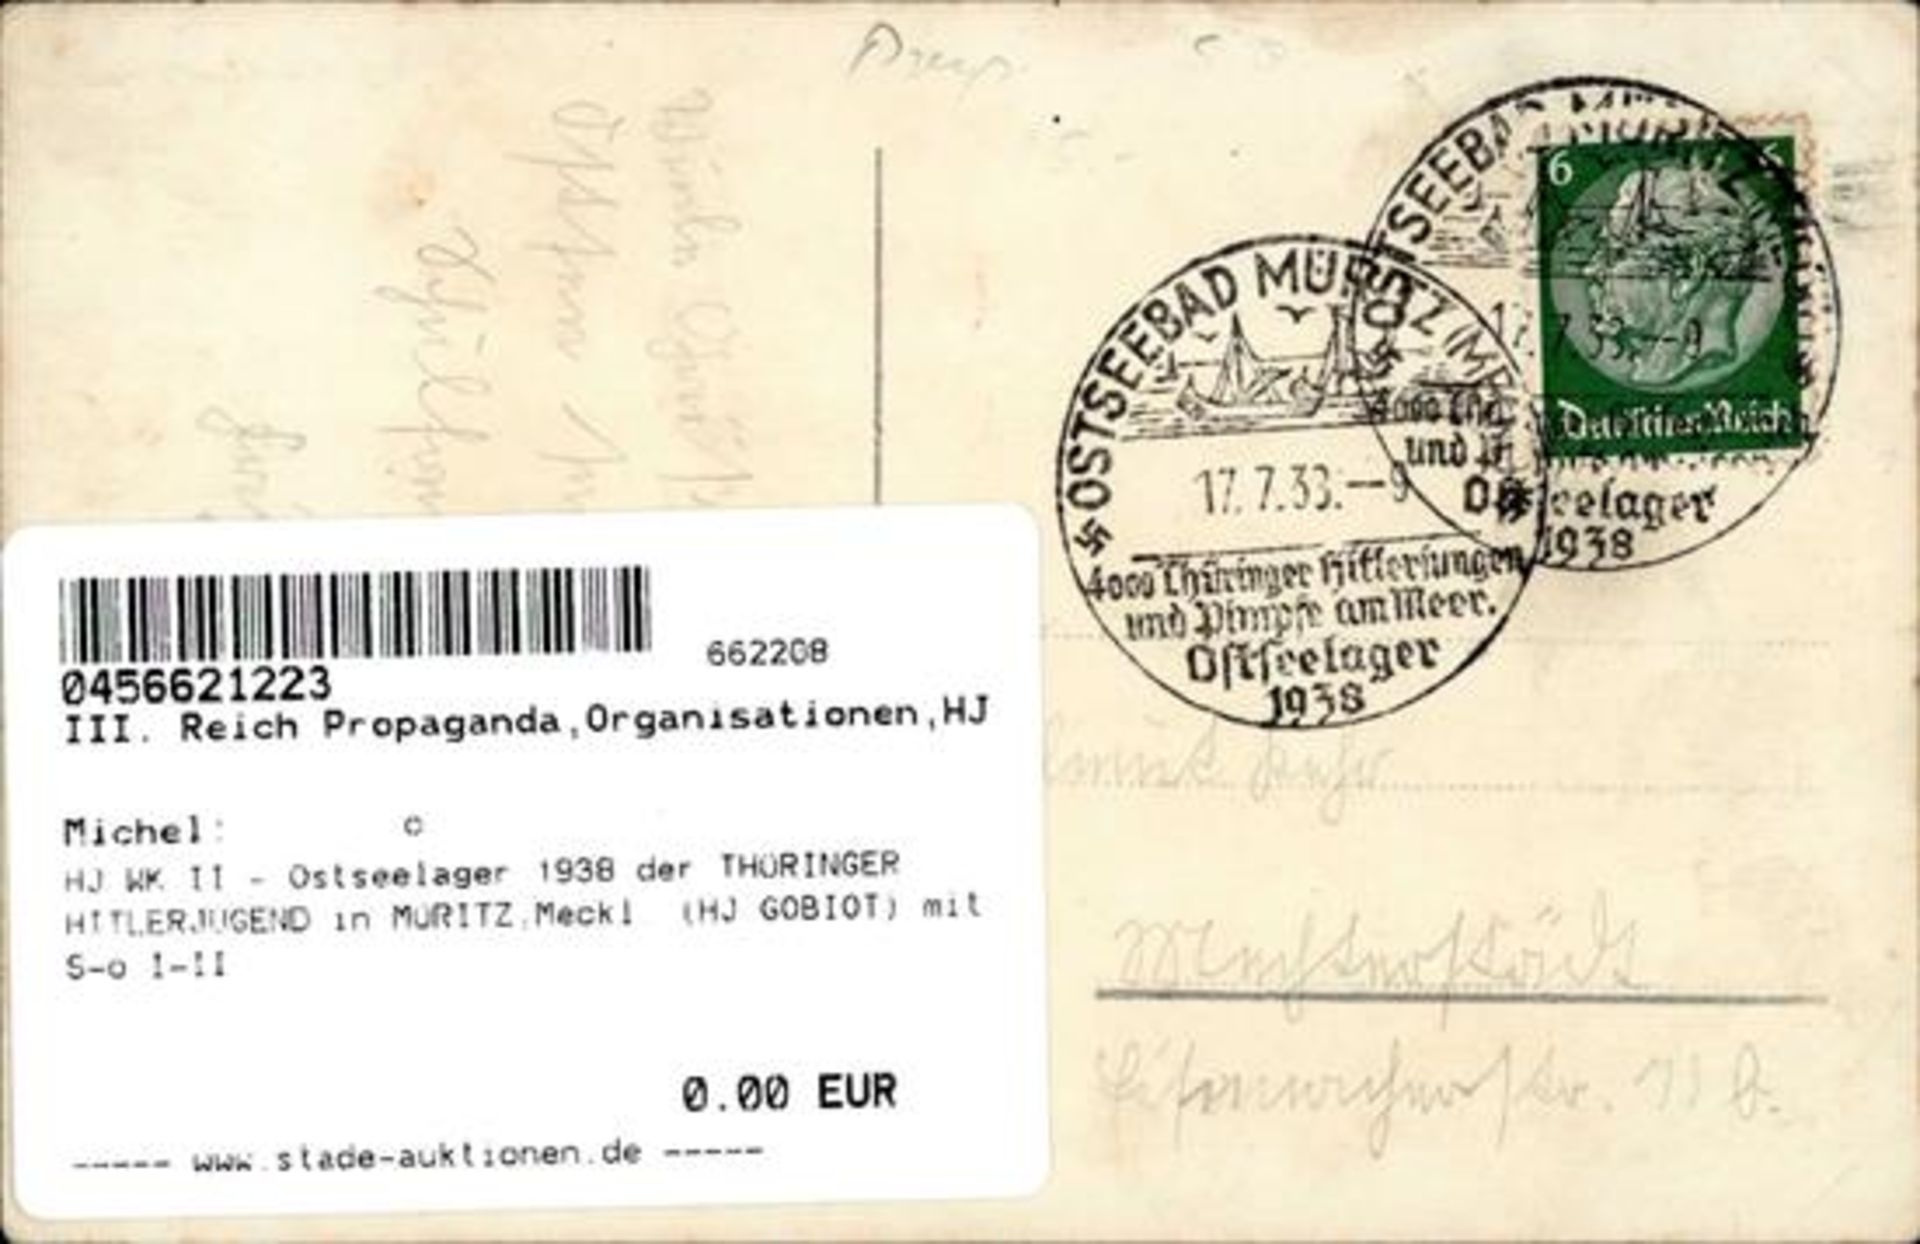 HJ WK II - Ostseelager 1938 der THÜRINGER HITLERJUGEND in MÜRITZ,Meckl. (HJ GOBIOT) mit S-o I-II - Bild 2 aus 2